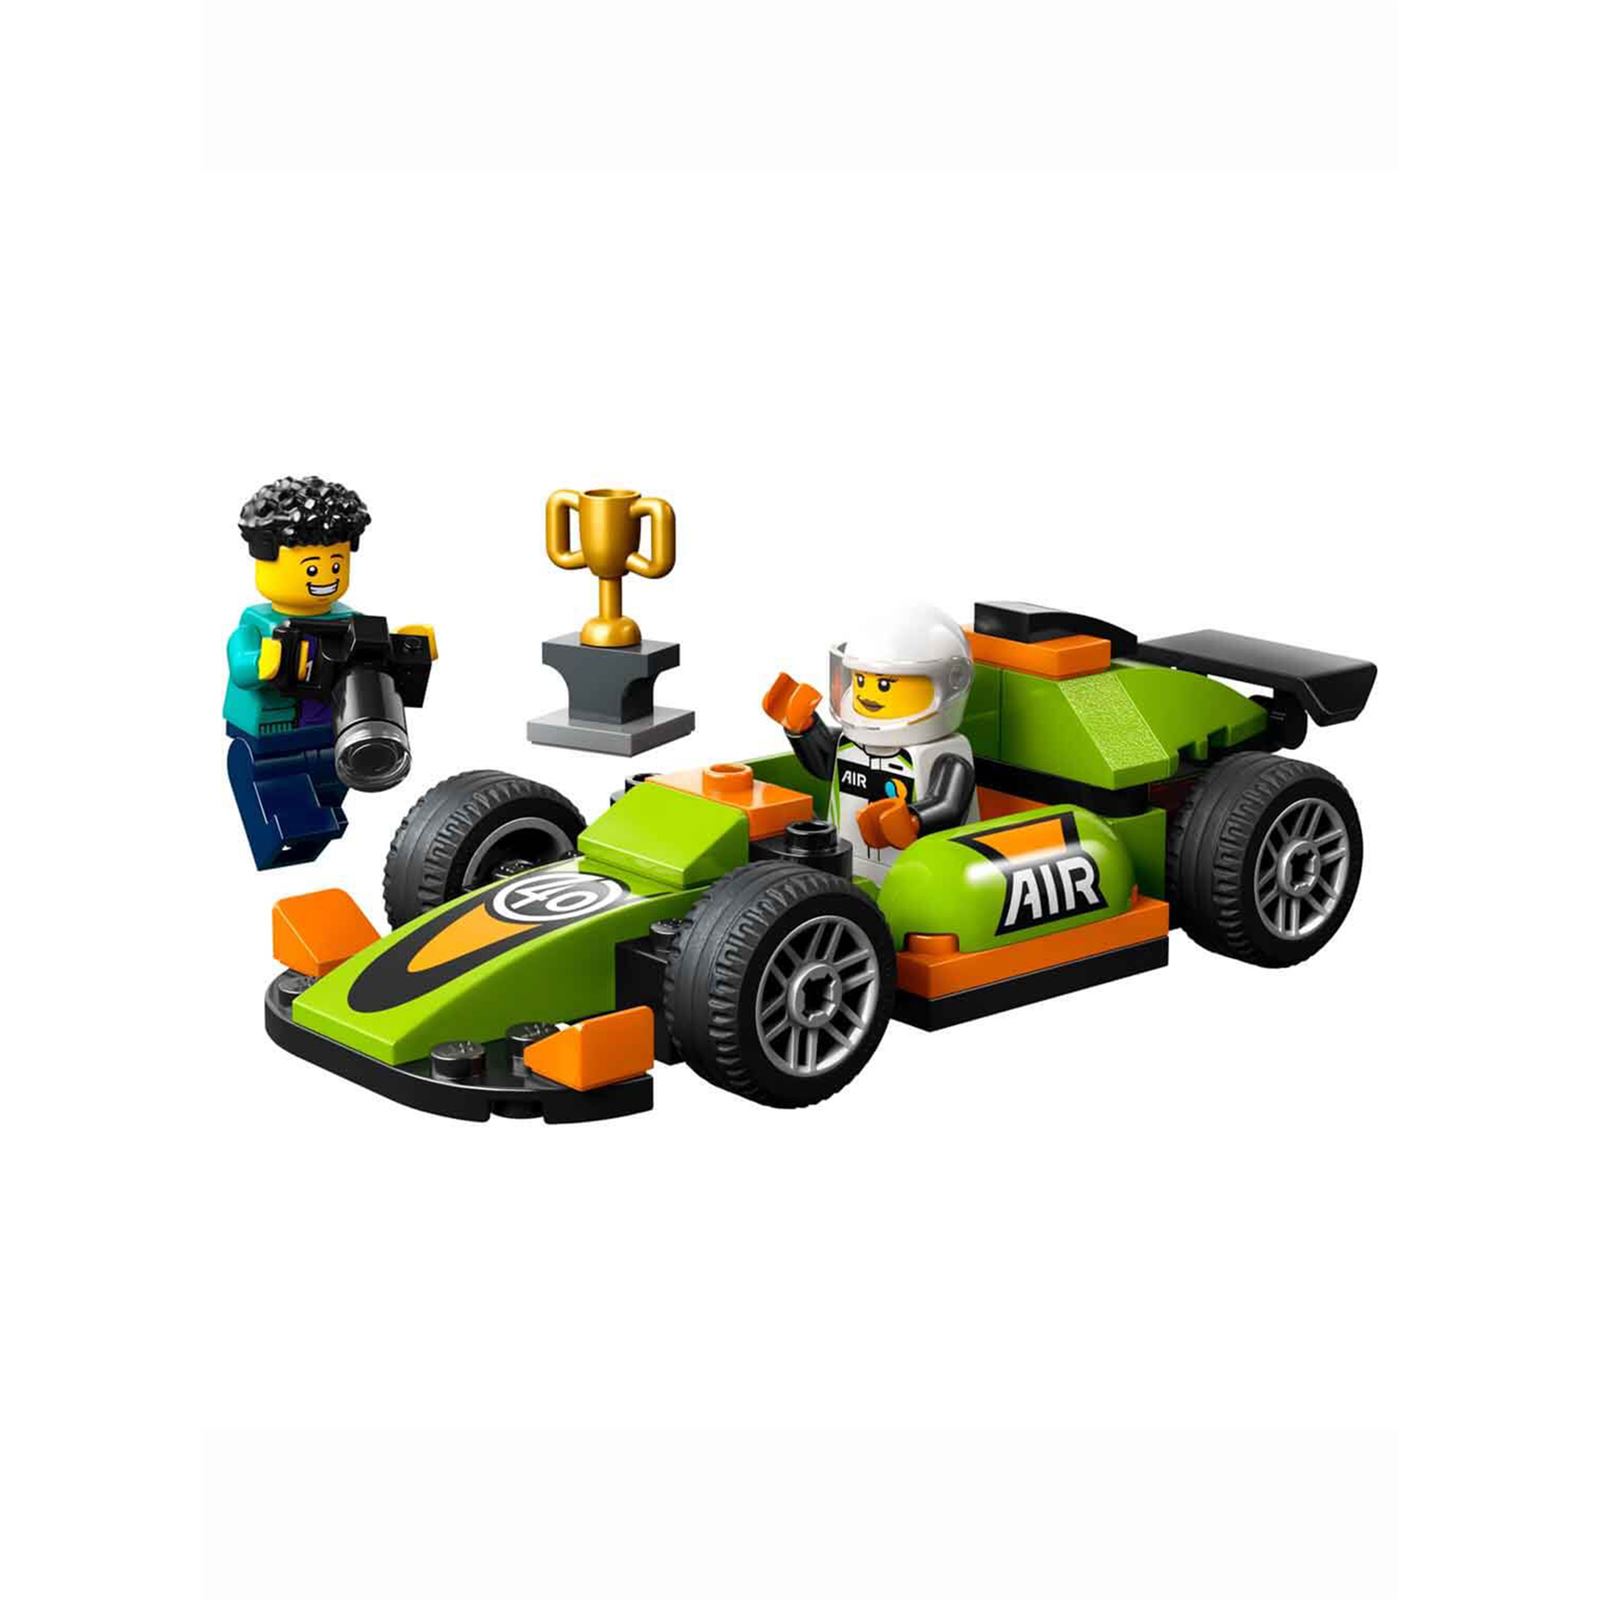 Lego Yeşil Yarış Arabası